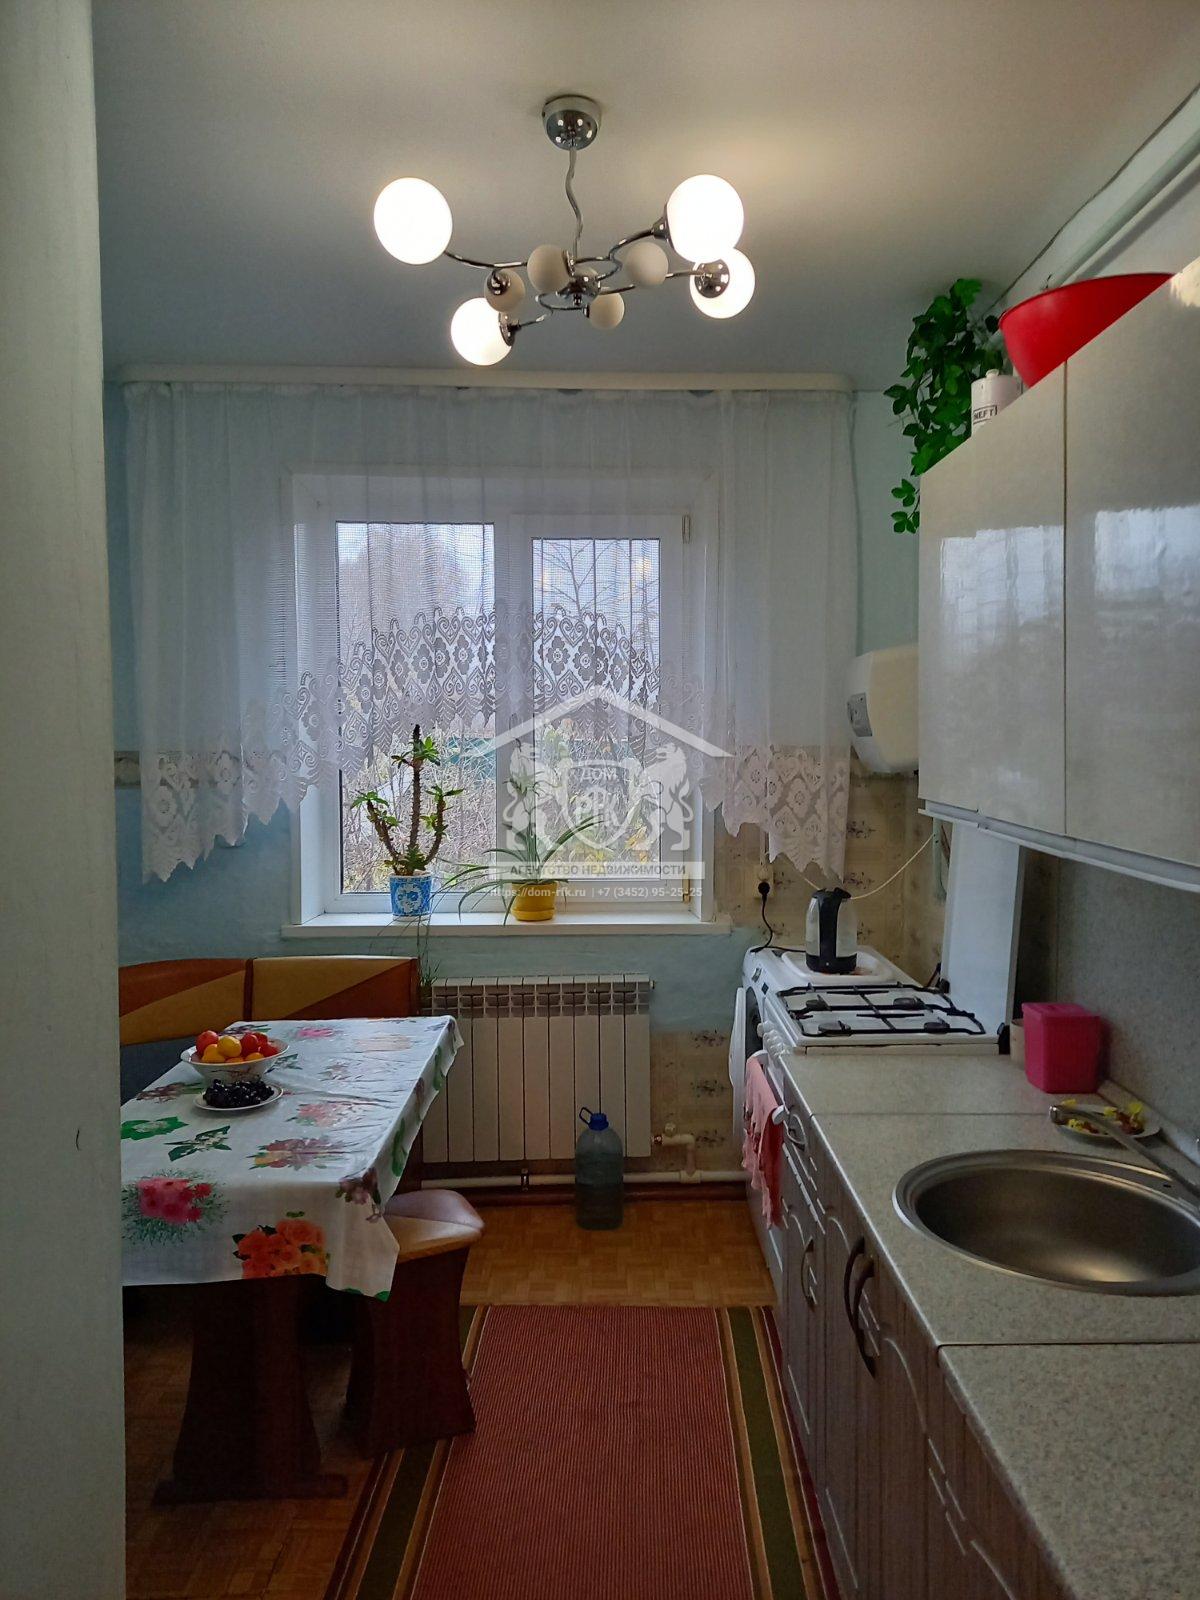 Благоустроенная 3-х комнатная квартира 65,7 кв. м. в с. Коточиги Викуловского района Тюменской области